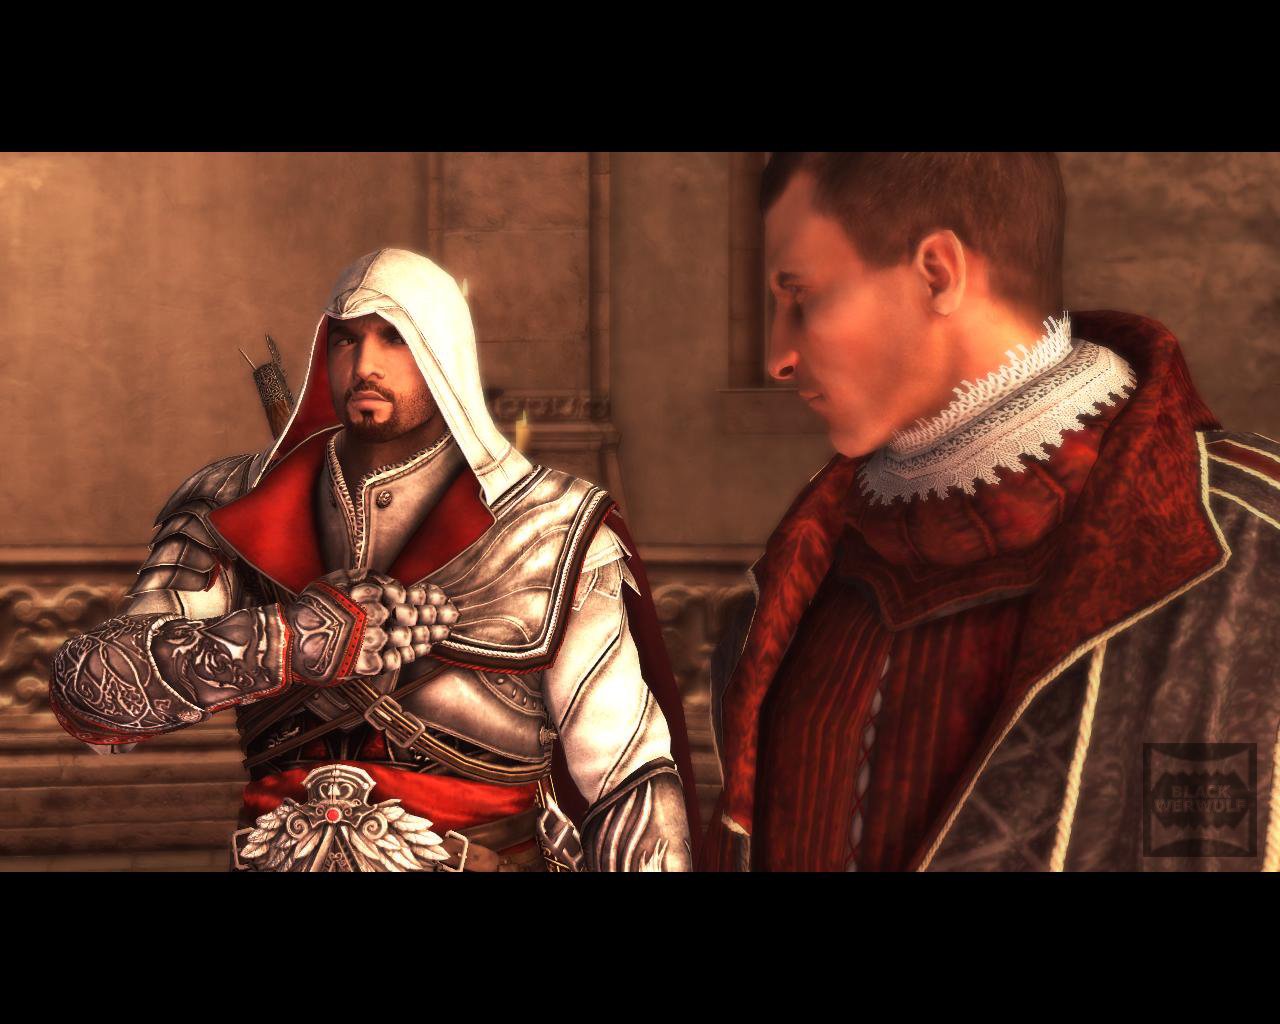 Creed brotherhood прохождение. Assassin’s Creed: Brotherhood миссии. Ассасин Крид бразерхуд синхронизация. Assassin s Creed 2 Brotherhood. Assassins Creed 2 братство крови код да Винчи.